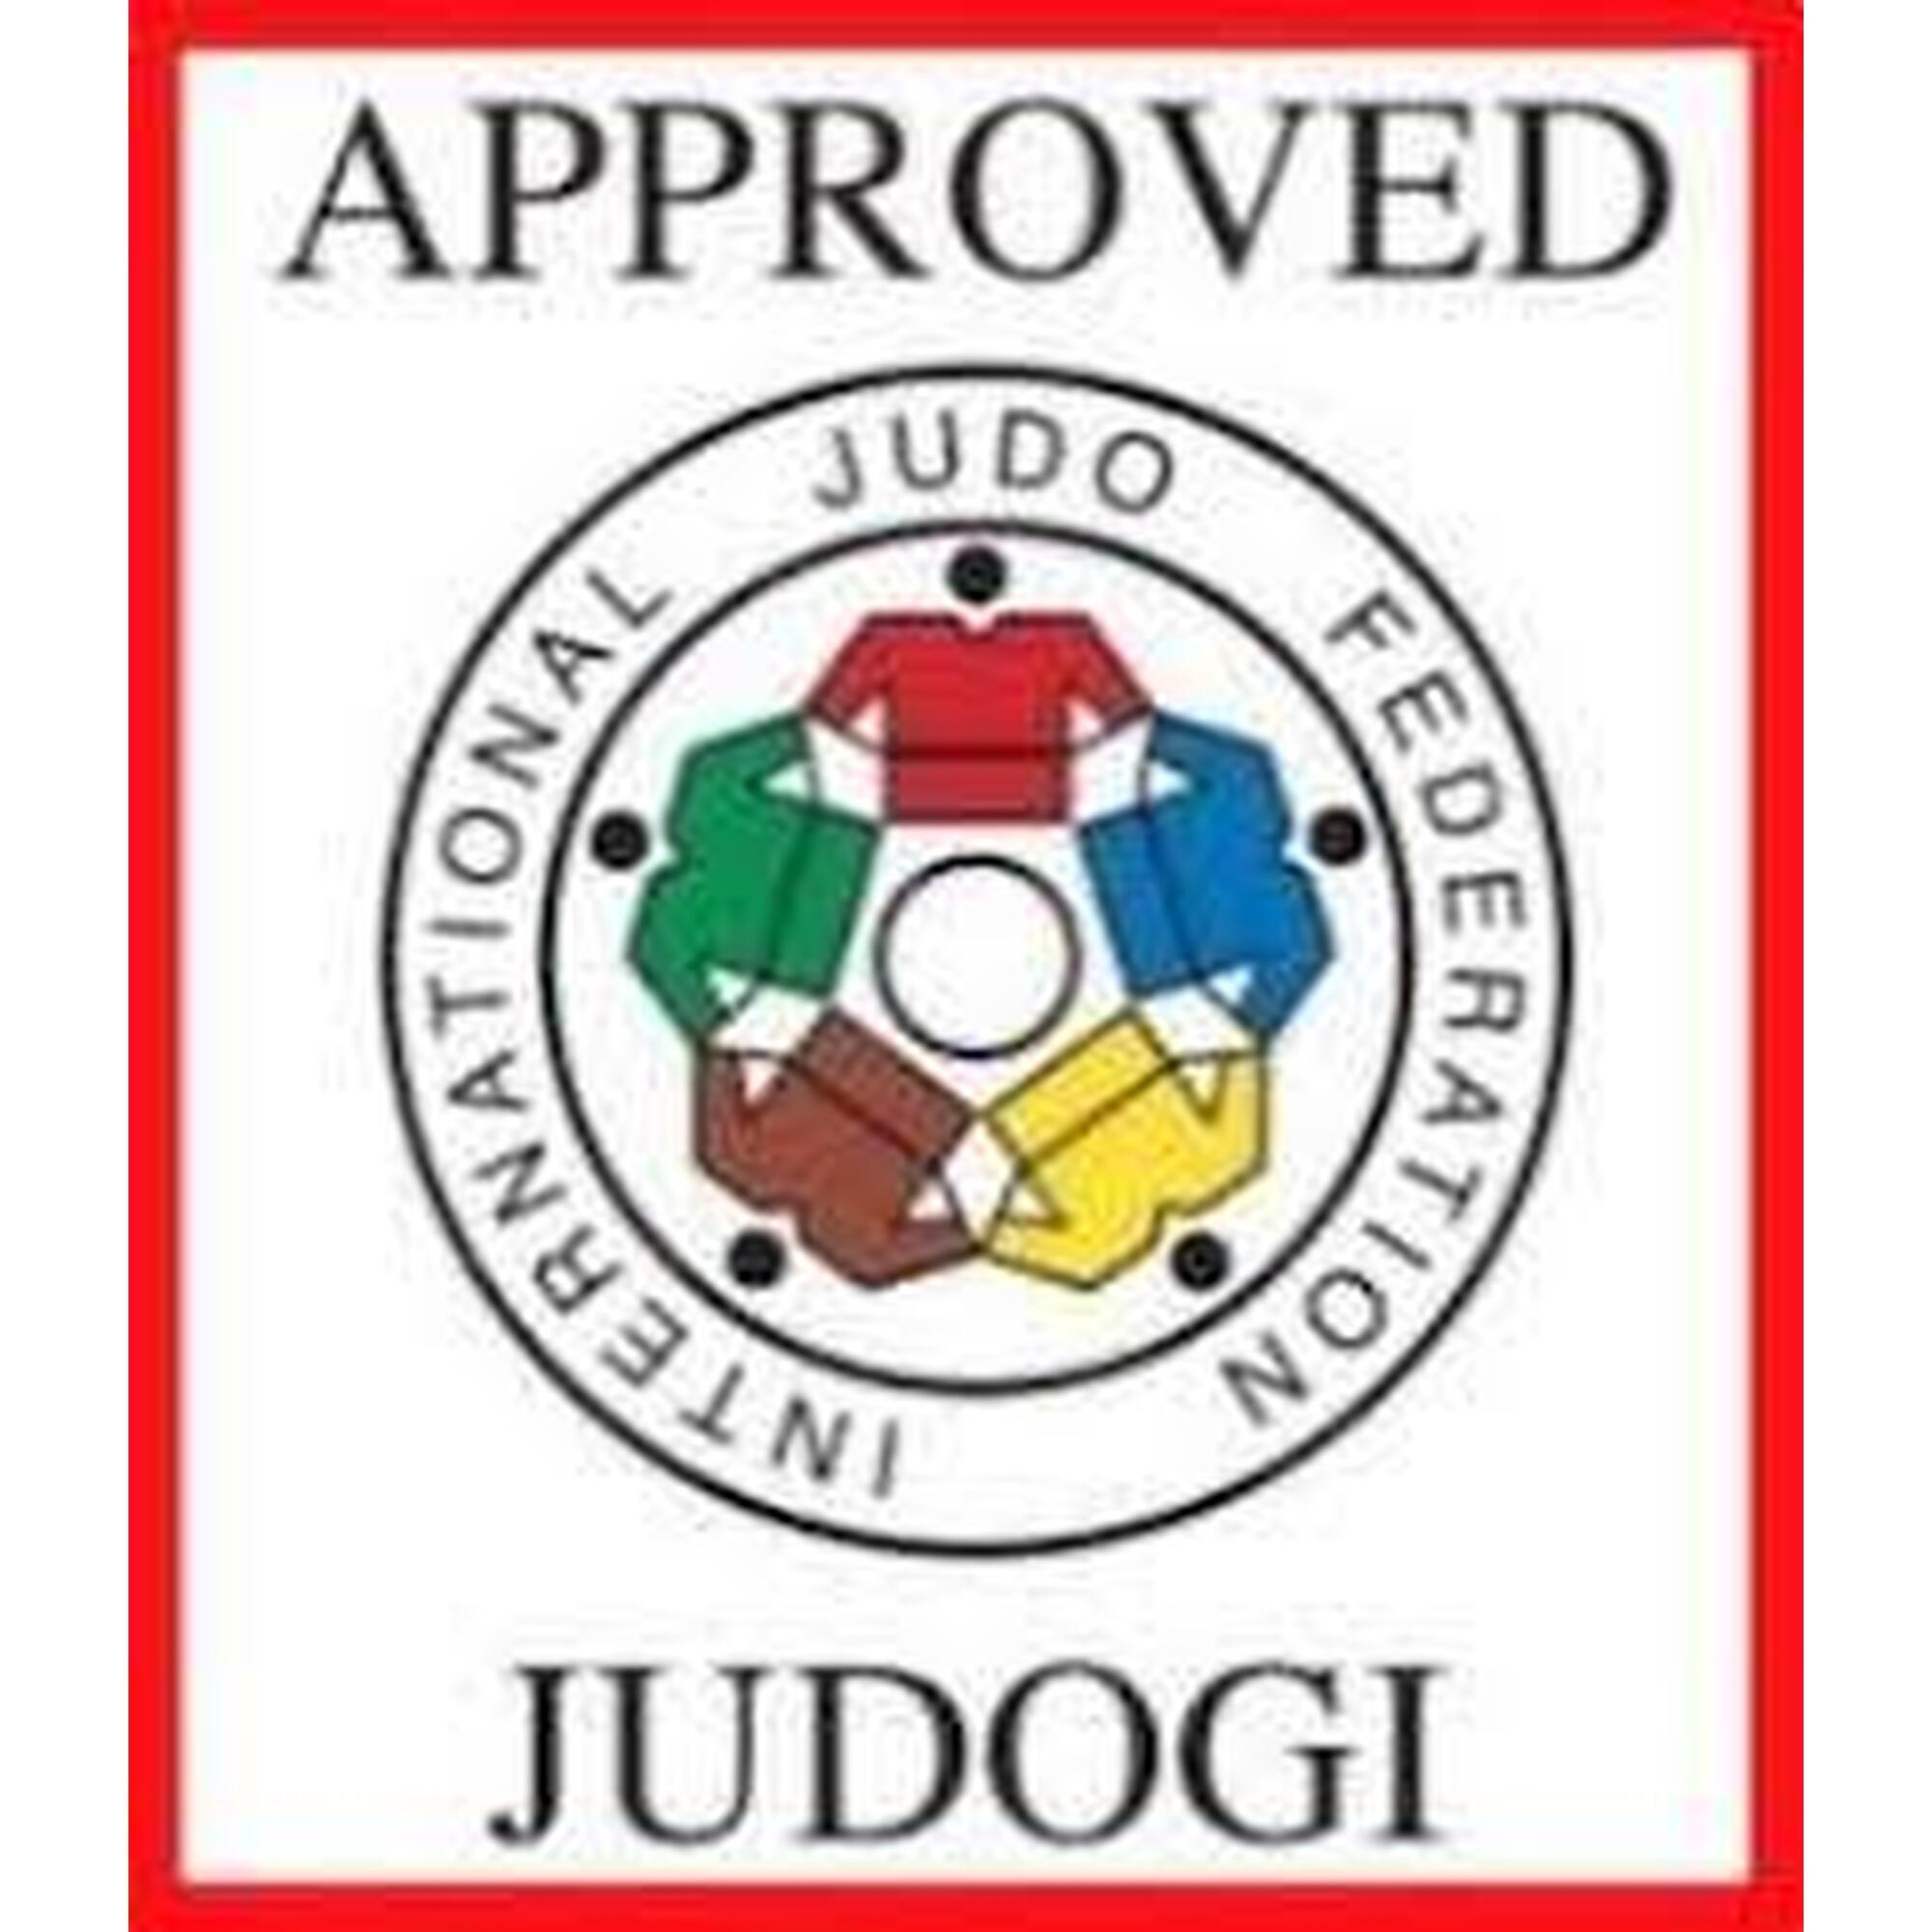 Kimono de Judo Superstar 750 Gr - Approuvé IJF - Blanc - Taille 180cm